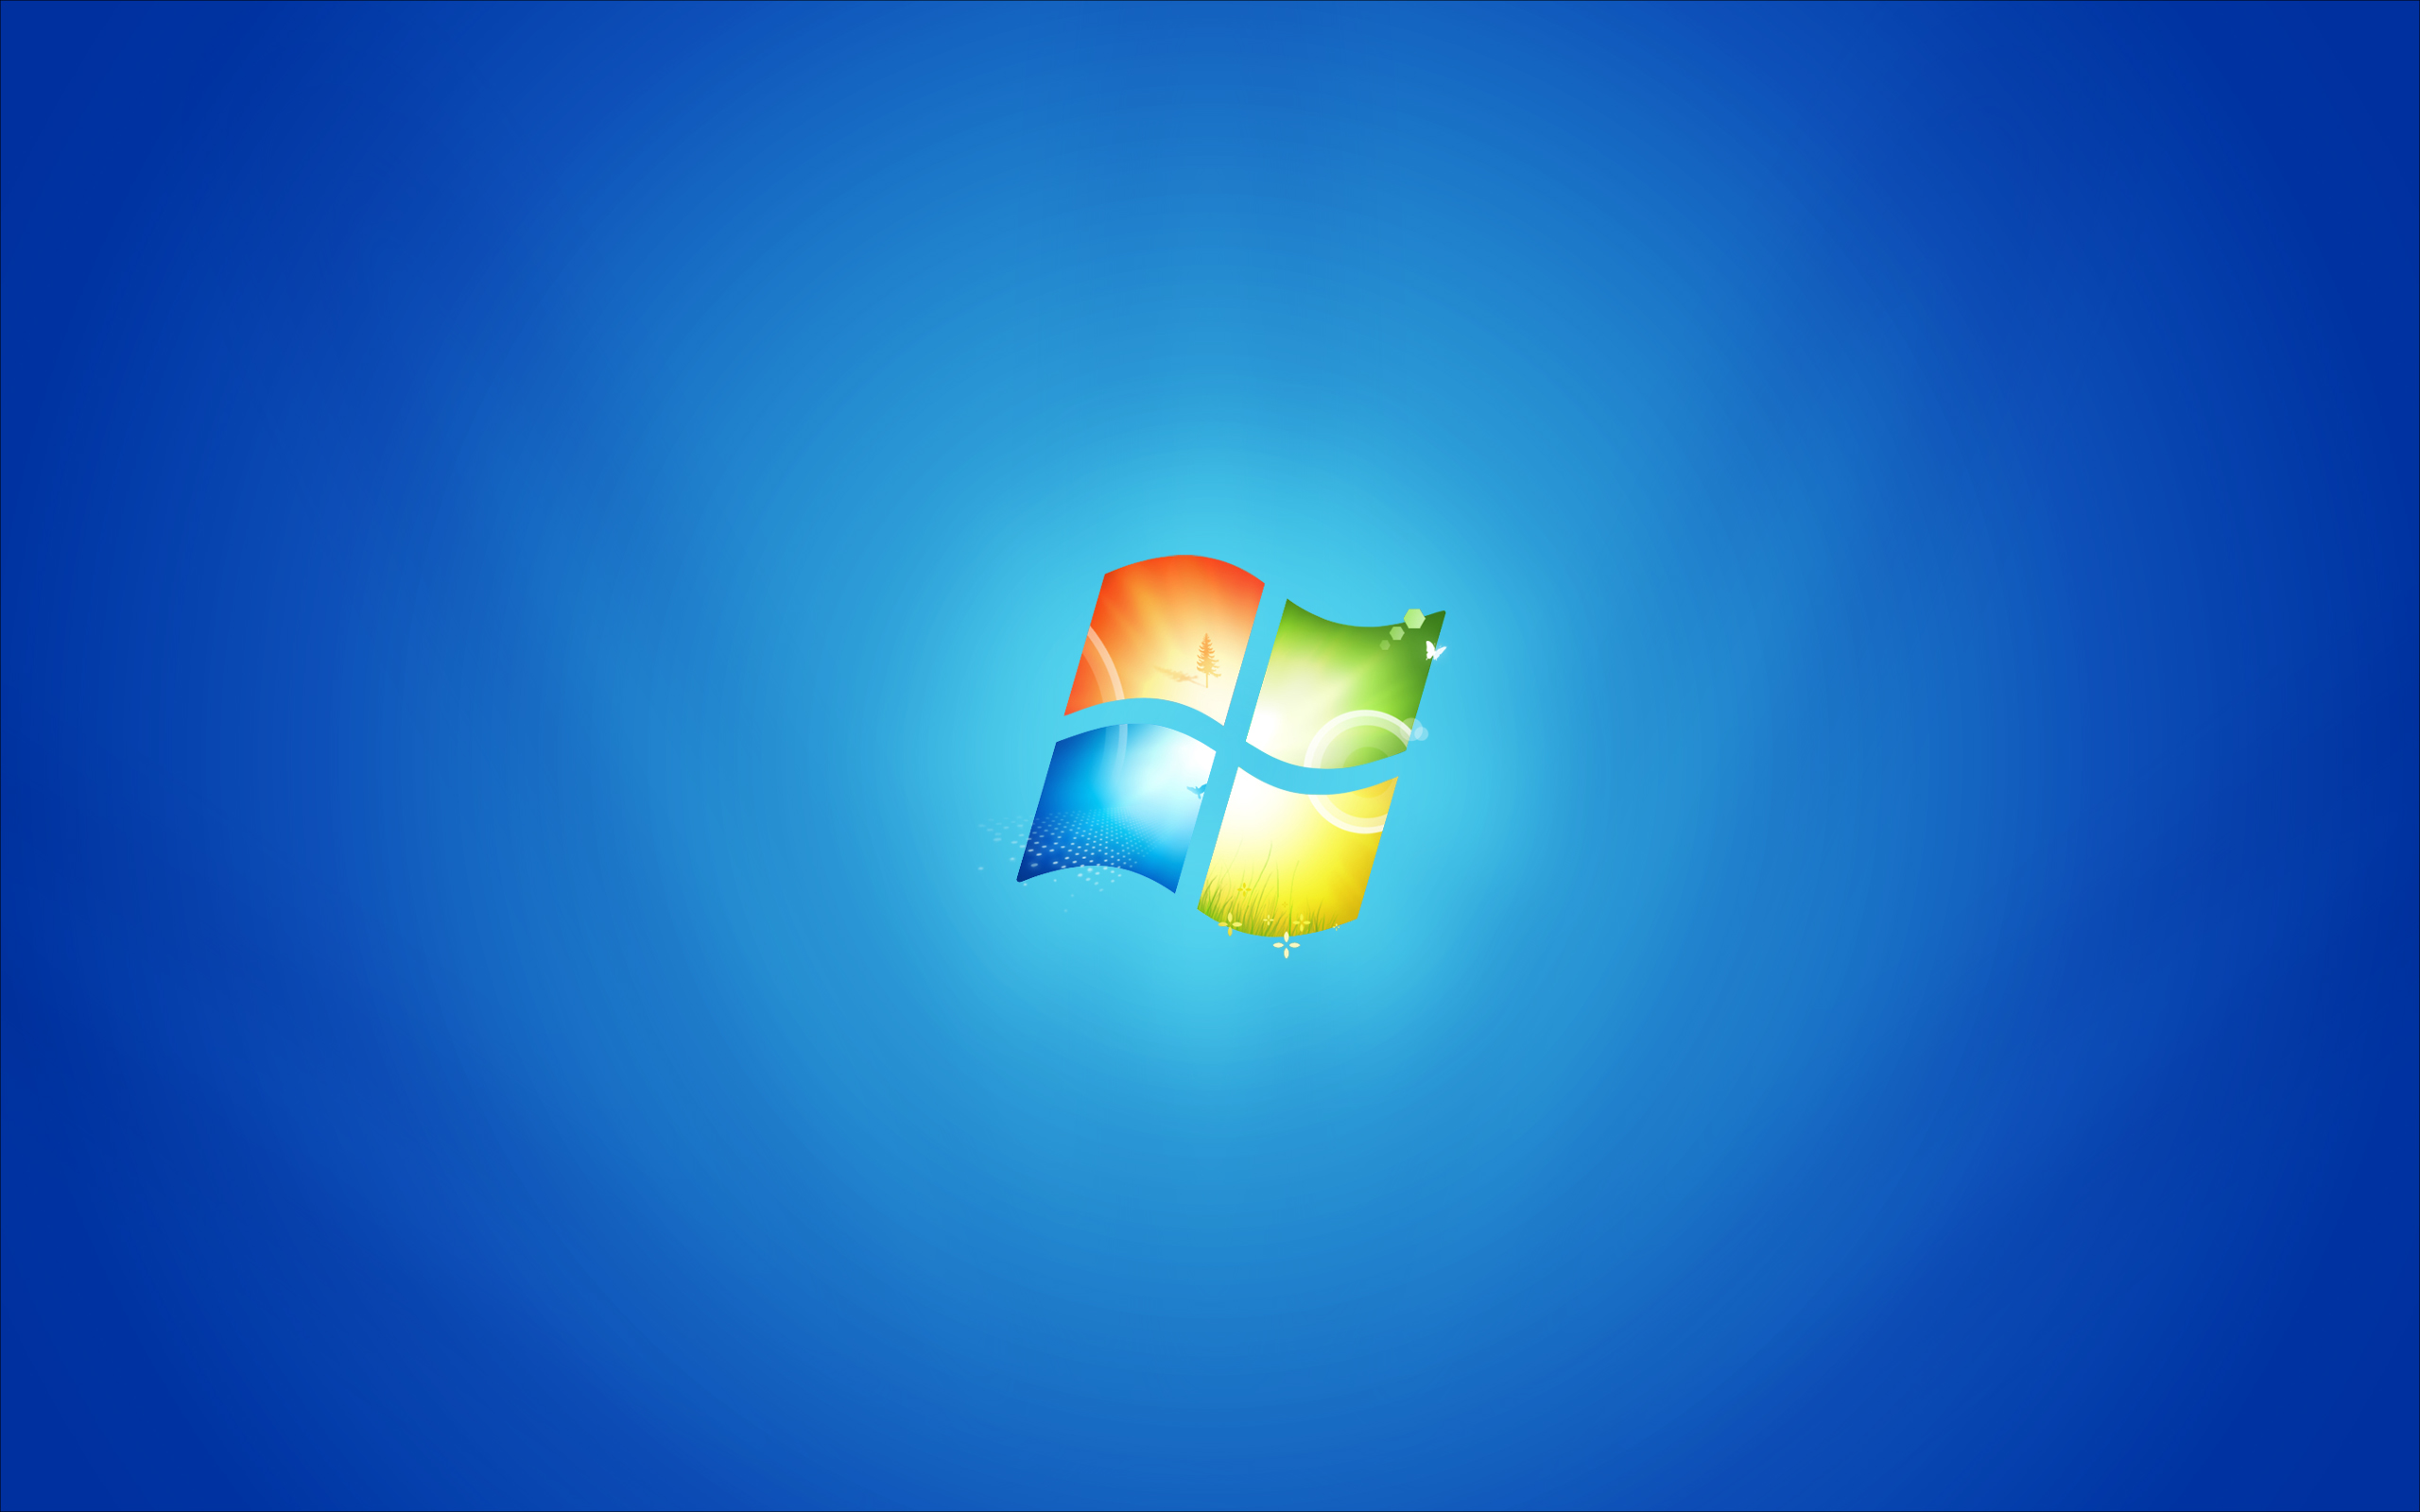 Bạn muốn tìm kiếm một vị trí hoàn hảo để đặt hình nền trên Windows 7? Hãy để chúng tôi giúp bạn. Với địa điểm và các tùy chọn đa dạng, bạn sẽ nhận được một lời mời để quan sát hình nền tuyệt đẹp trên màn hình Windows 7 của bạn.